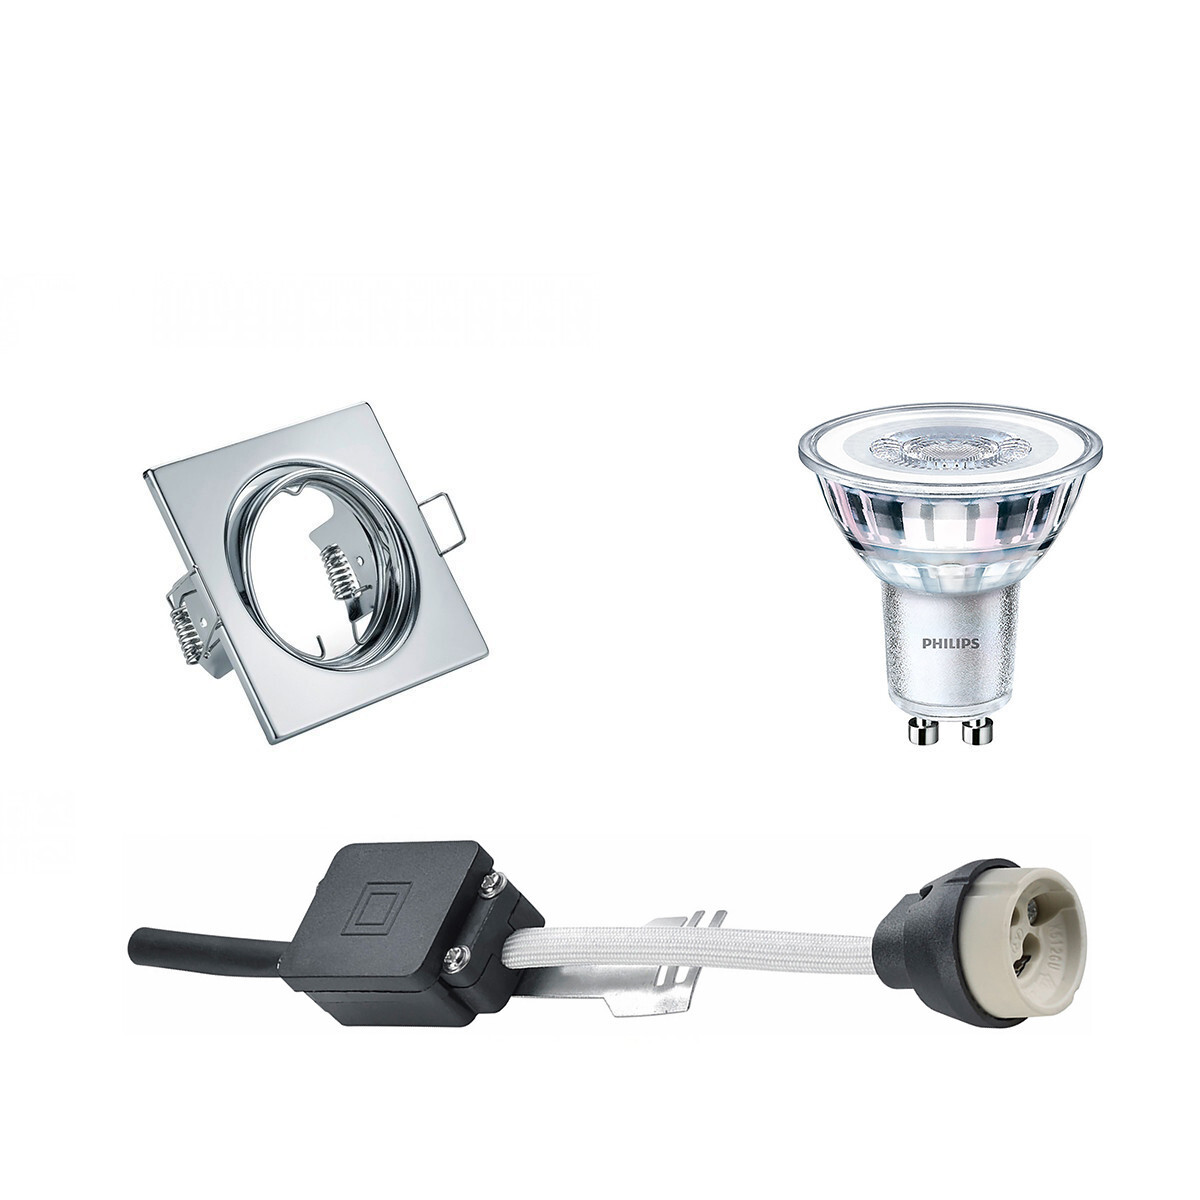 BES LED LED Spot Set - GU10 Fitting - Inbouw Vierkant - Glans Chroom - Kantelbaar 80mm - Philips - CorePro 827 36D - 5W - Warm Wit 2700K - Dimbaar